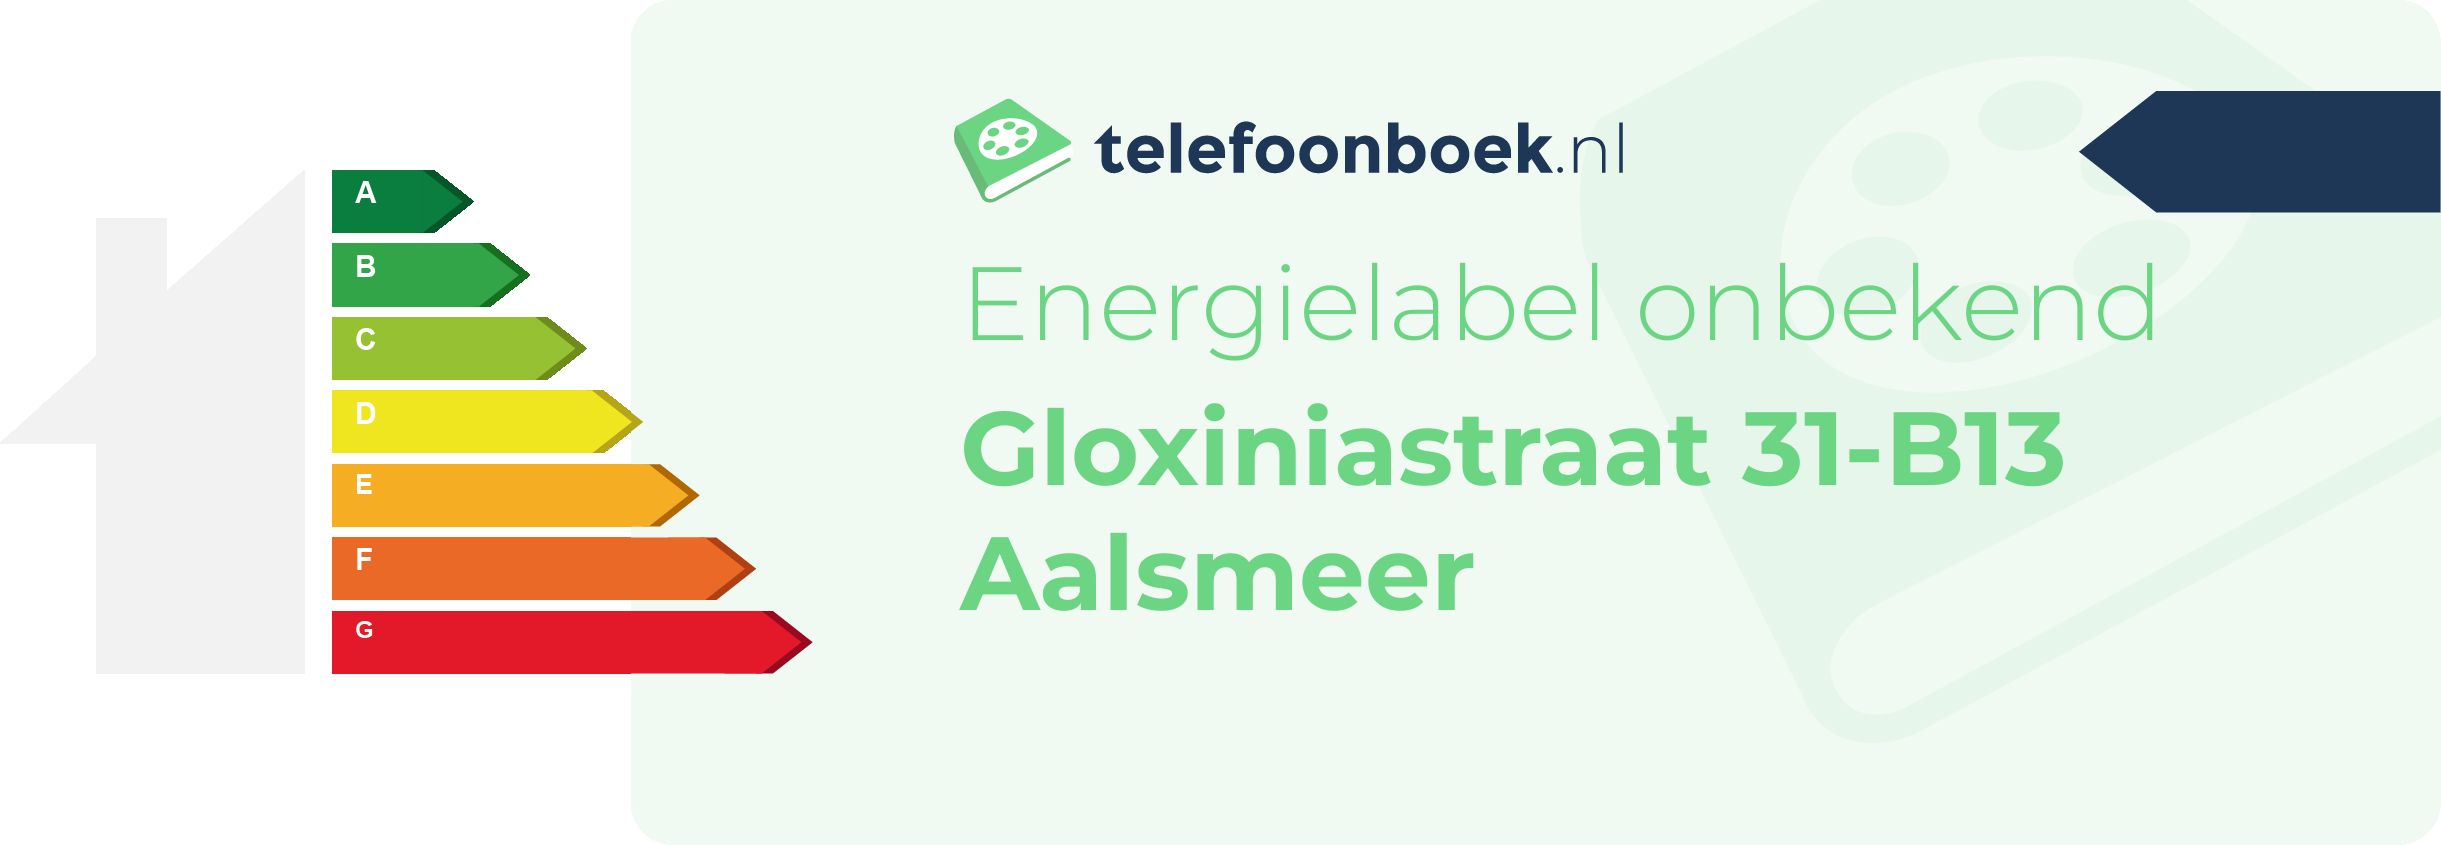 Energielabel Gloxiniastraat 31-B13 Aalsmeer